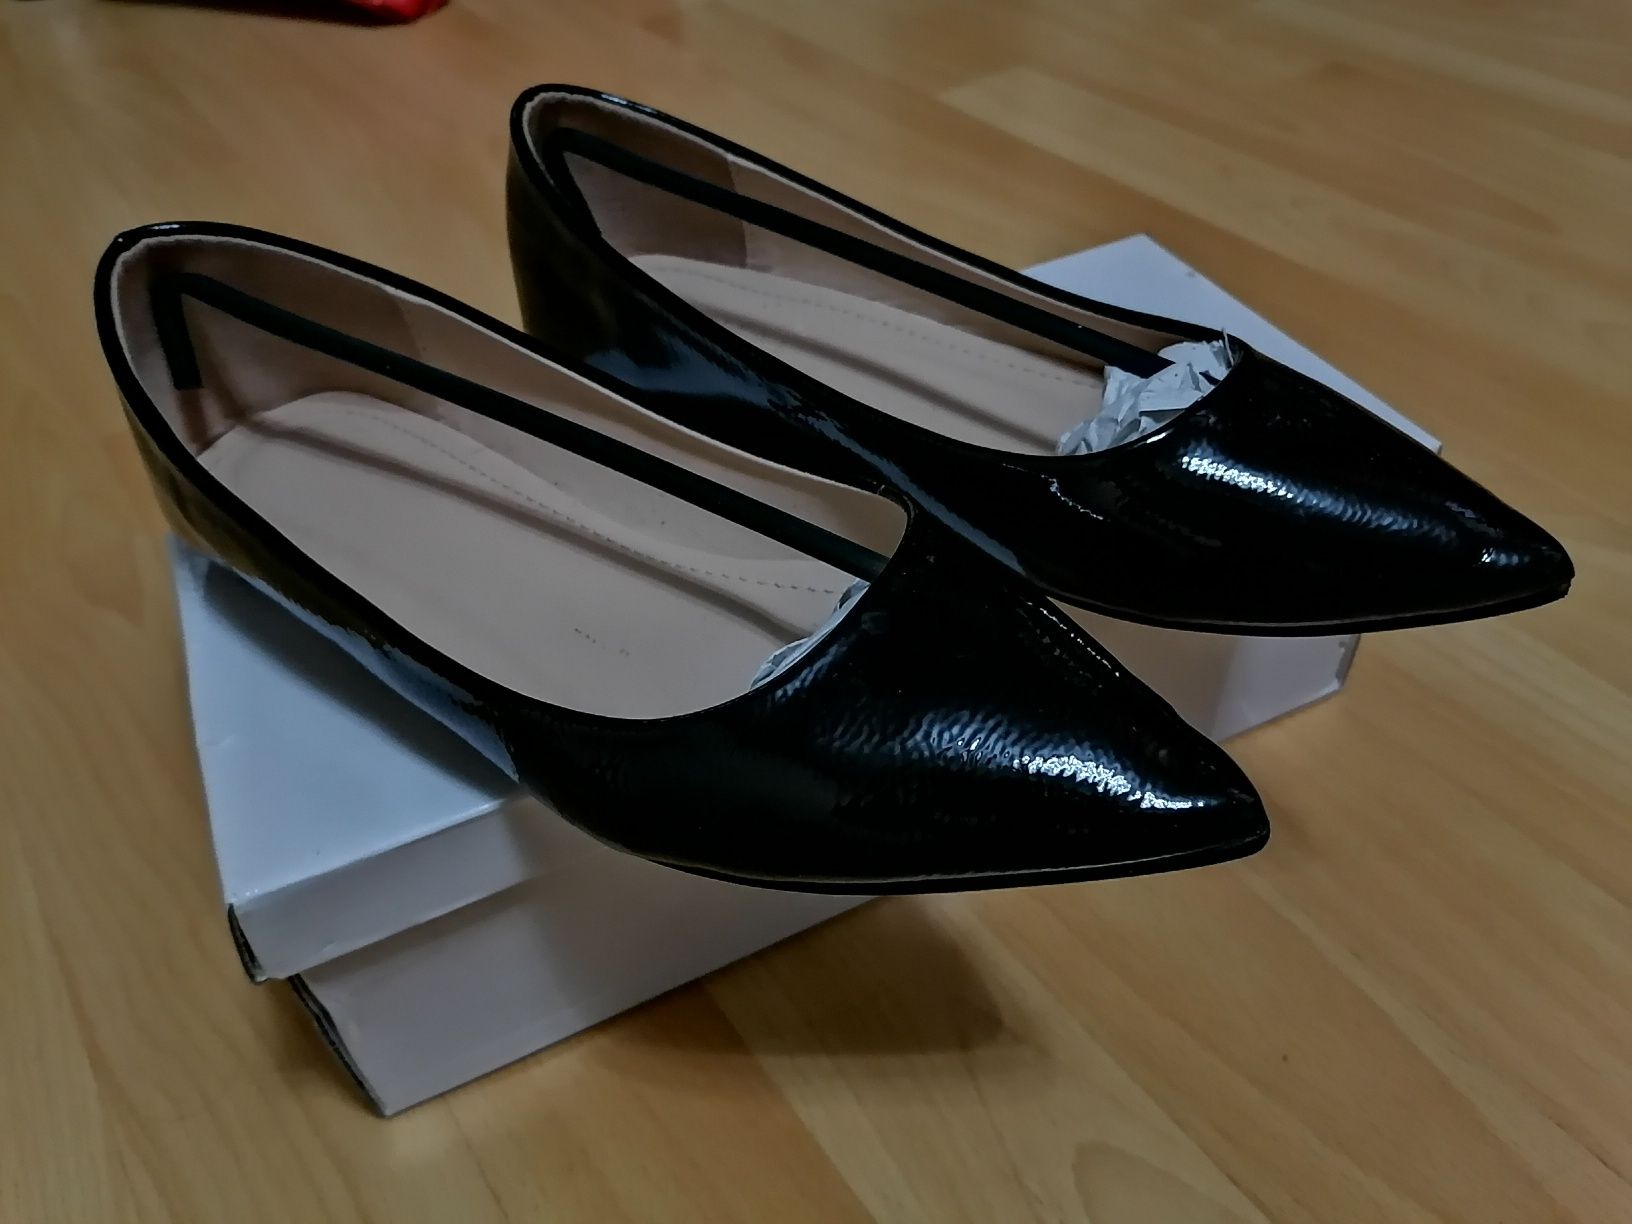 Женские чёрные лаковые балетки лоферы туфли, бренд Pinkai, оригинал